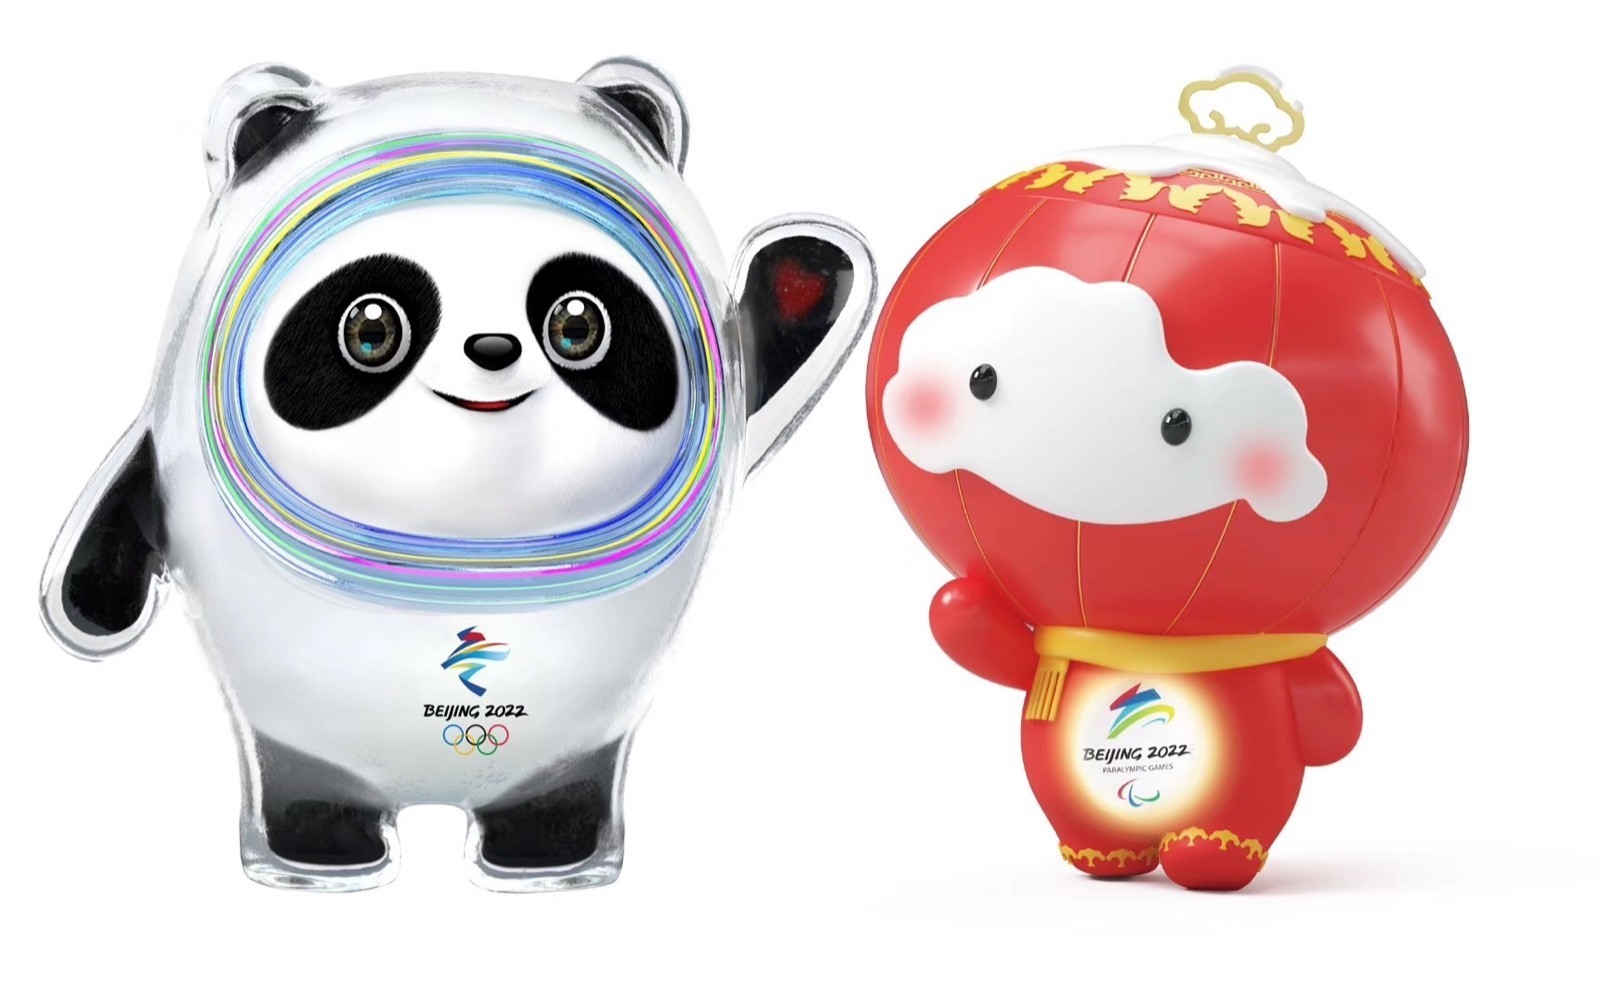 北京冬奥会吉祥物相关产品将于10月5日开卖 还将呈现在门票设计上